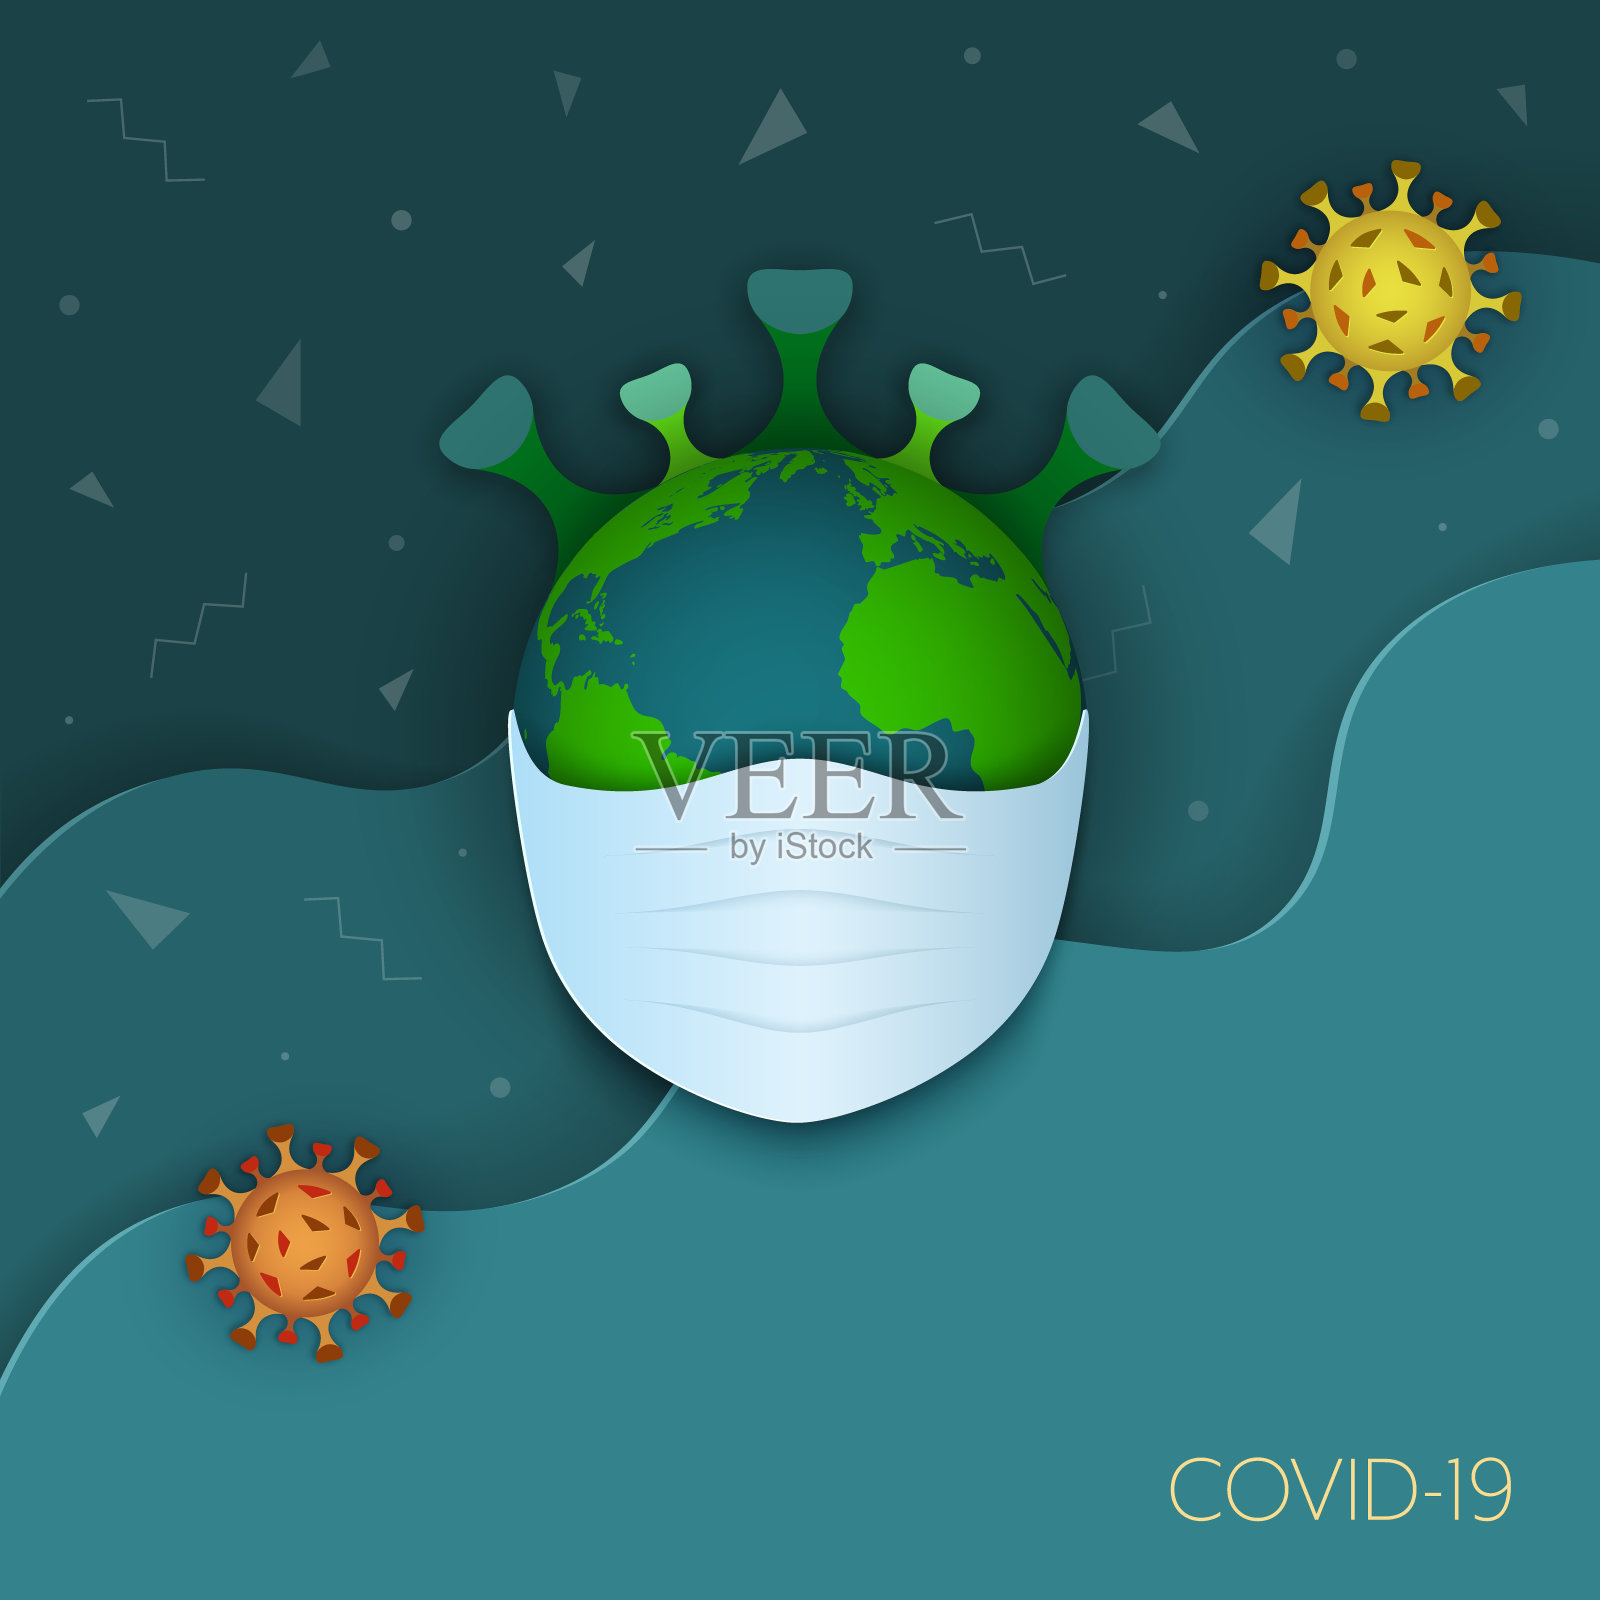 行星地球与冠状病毒(2019-nCoV)冠状病毒的医疗口罩在波浪背景与漂浮的冠状病毒颗粒周围。矢量插图在卡通纸艺术风格。插画图片素材